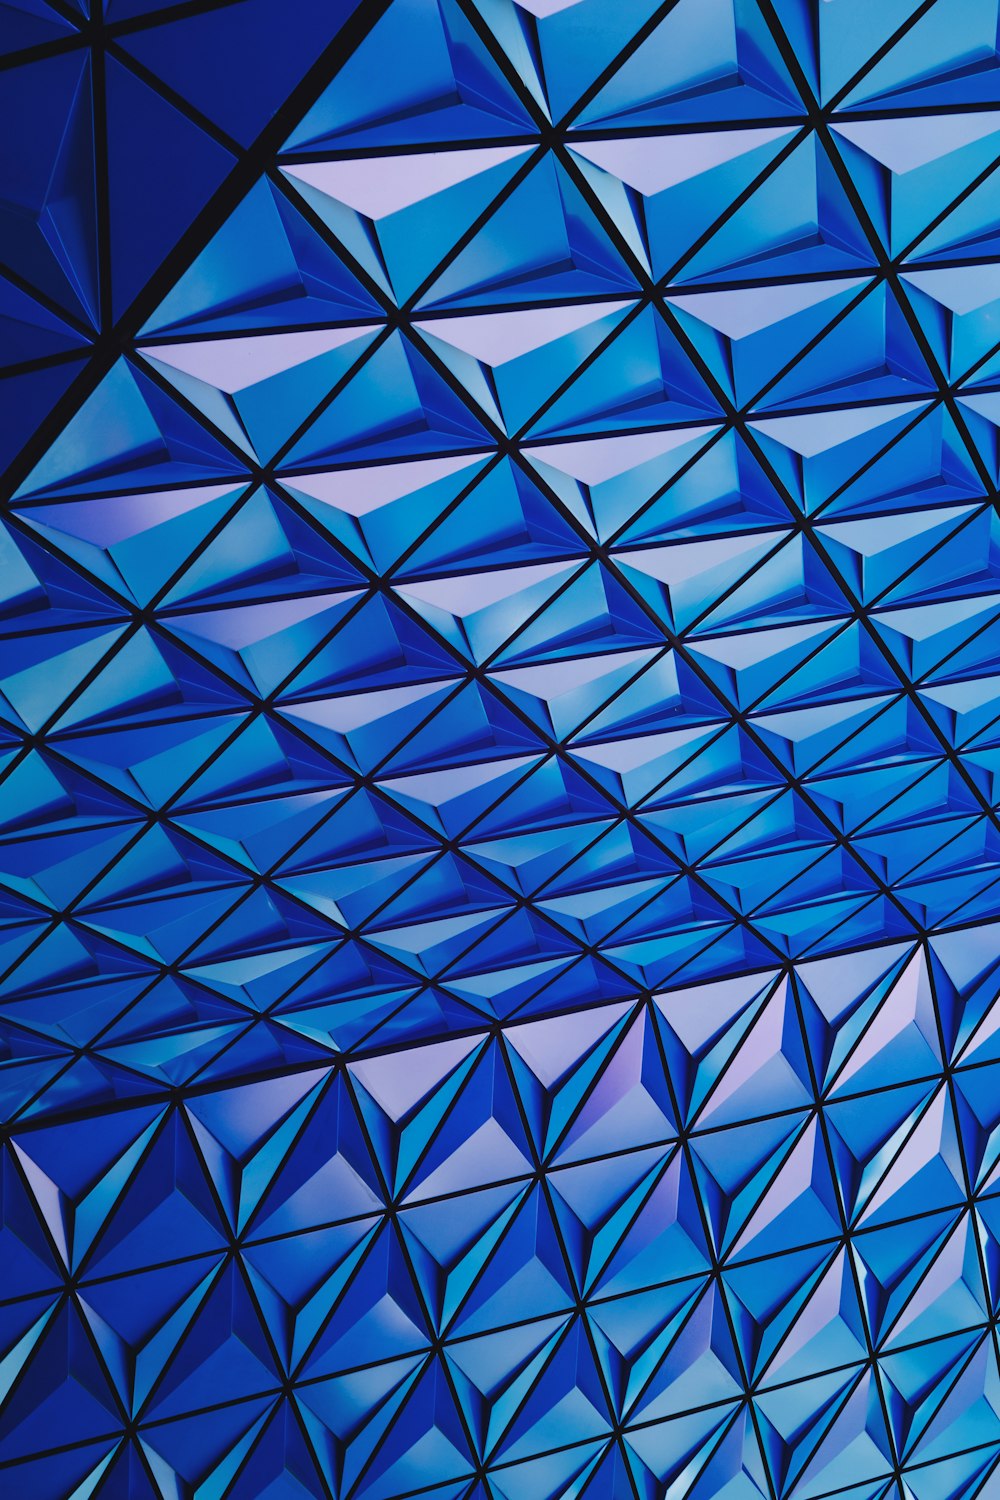 Photographie d’architecture de plafond en verre bleu